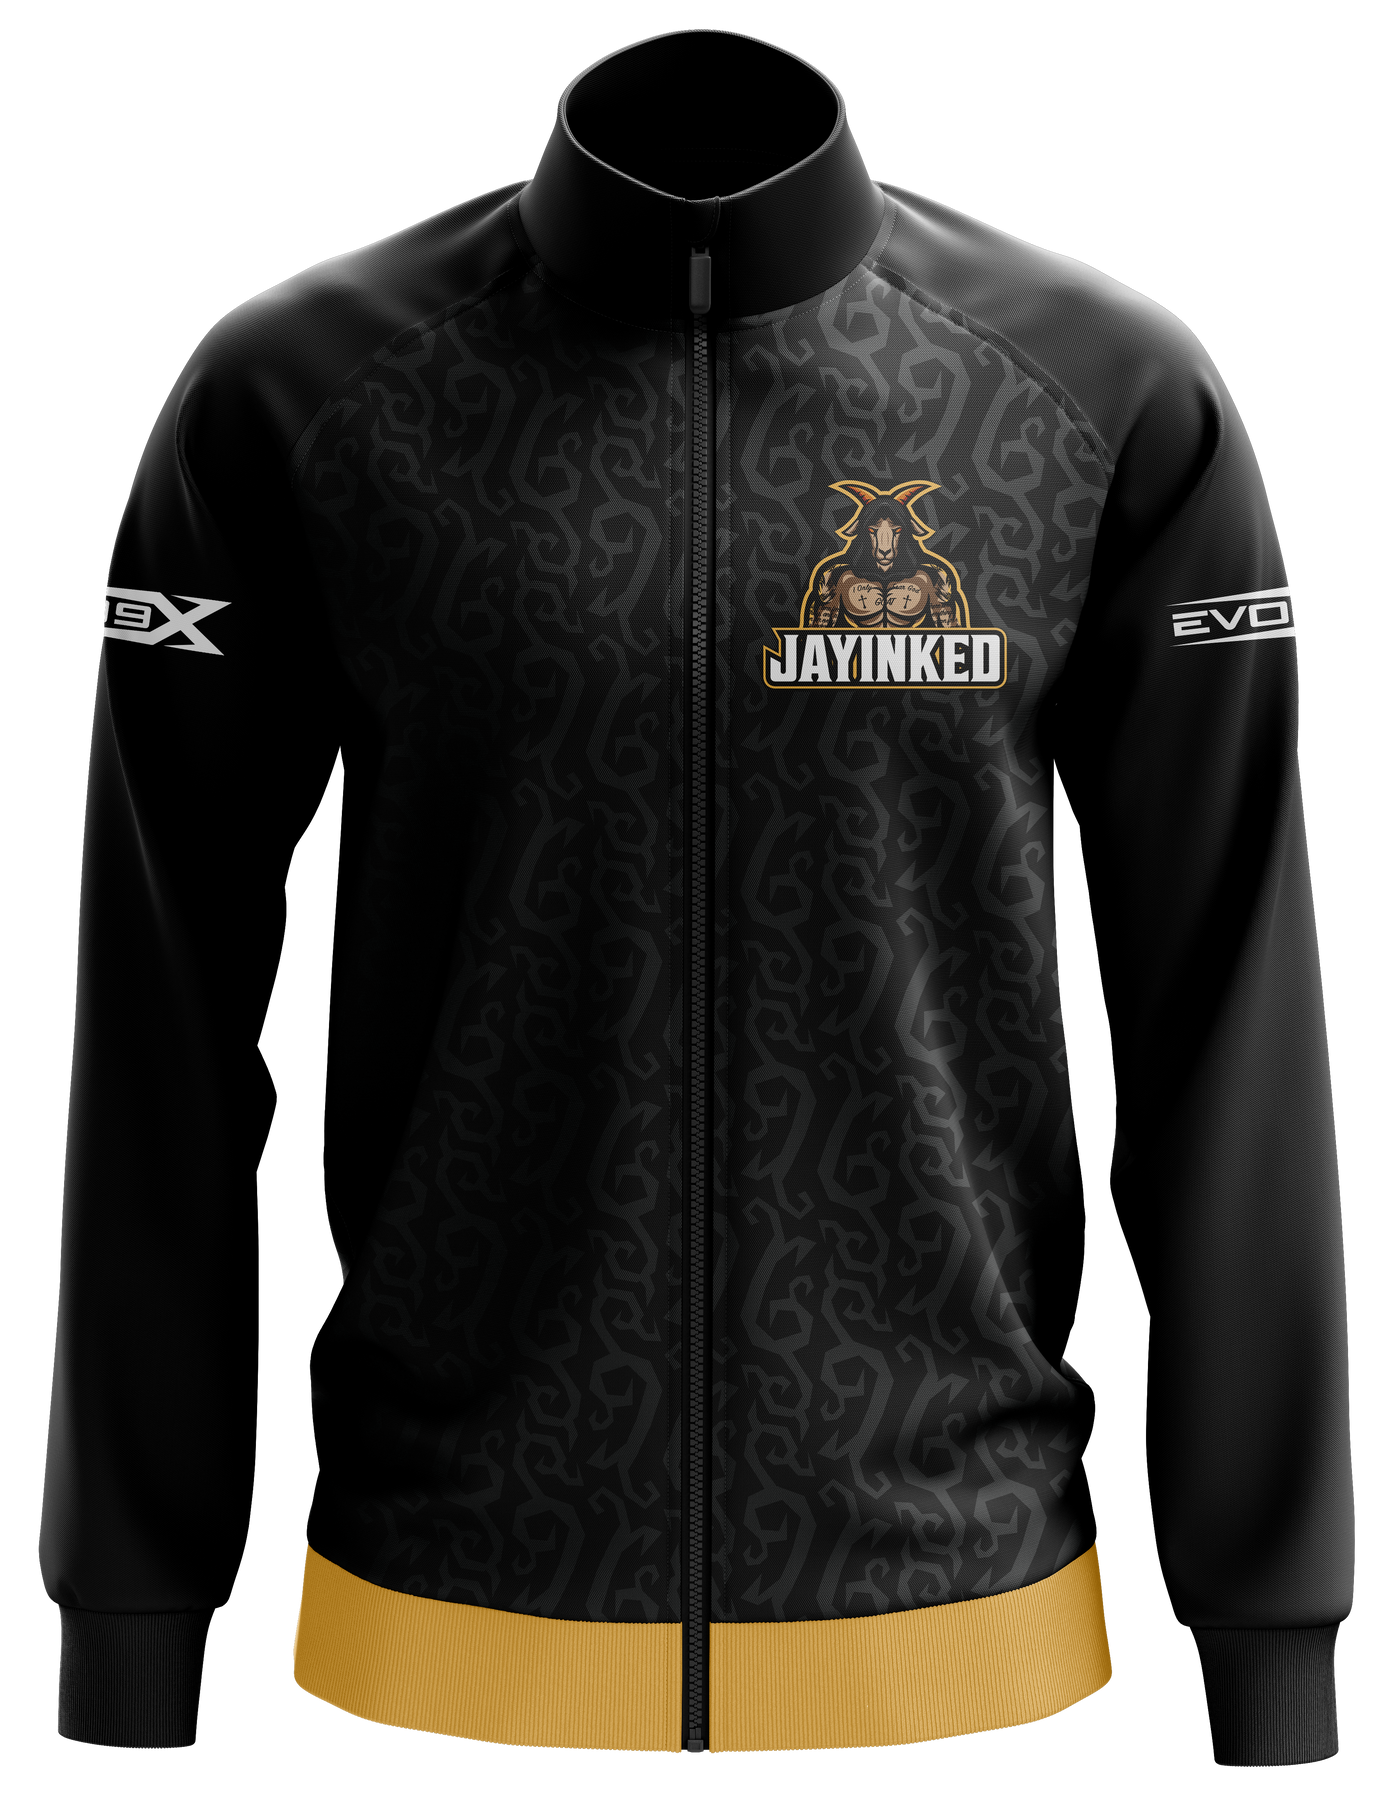 Jayinked Pro Jacket